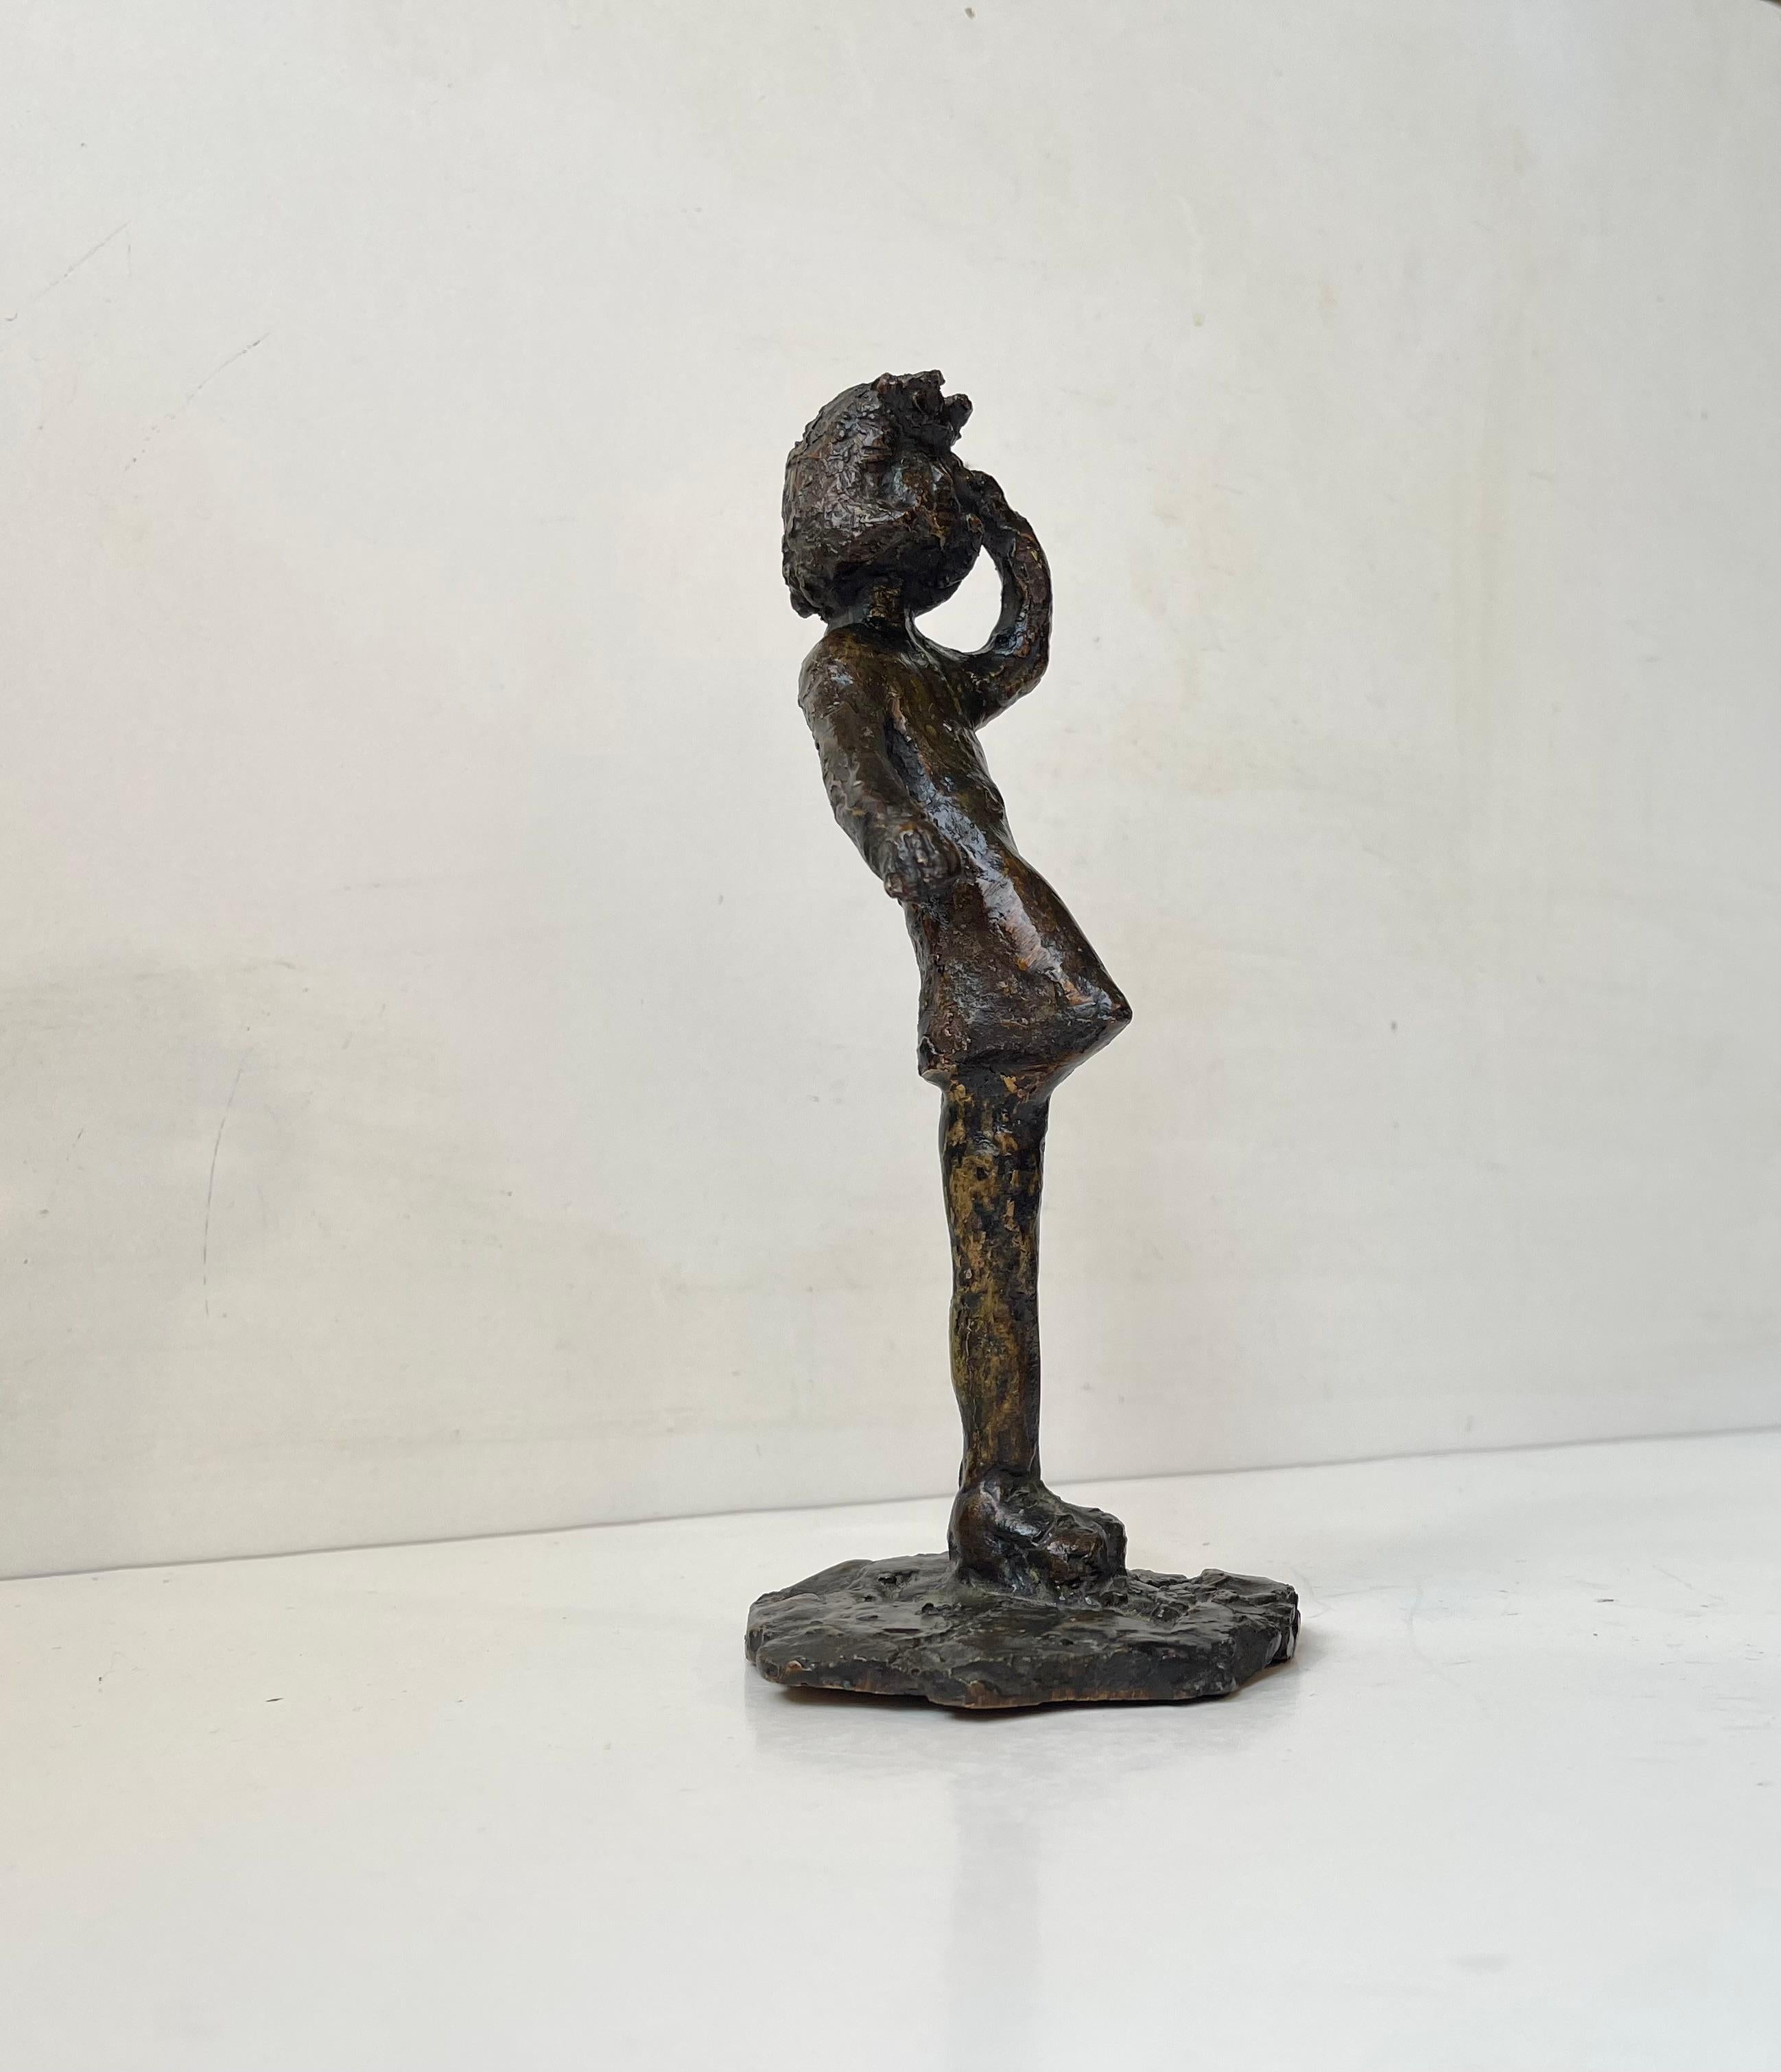 Remarquable bronze coulé à partir d'un moule en plâtre/céramique réalisé à main levée. Une technique inspirée de l'icône suisse Alberto Giacometti. Elle est signée par un artiste/sculpteur danois/scandinave non identifié. Dimensions : H : 21 cm,